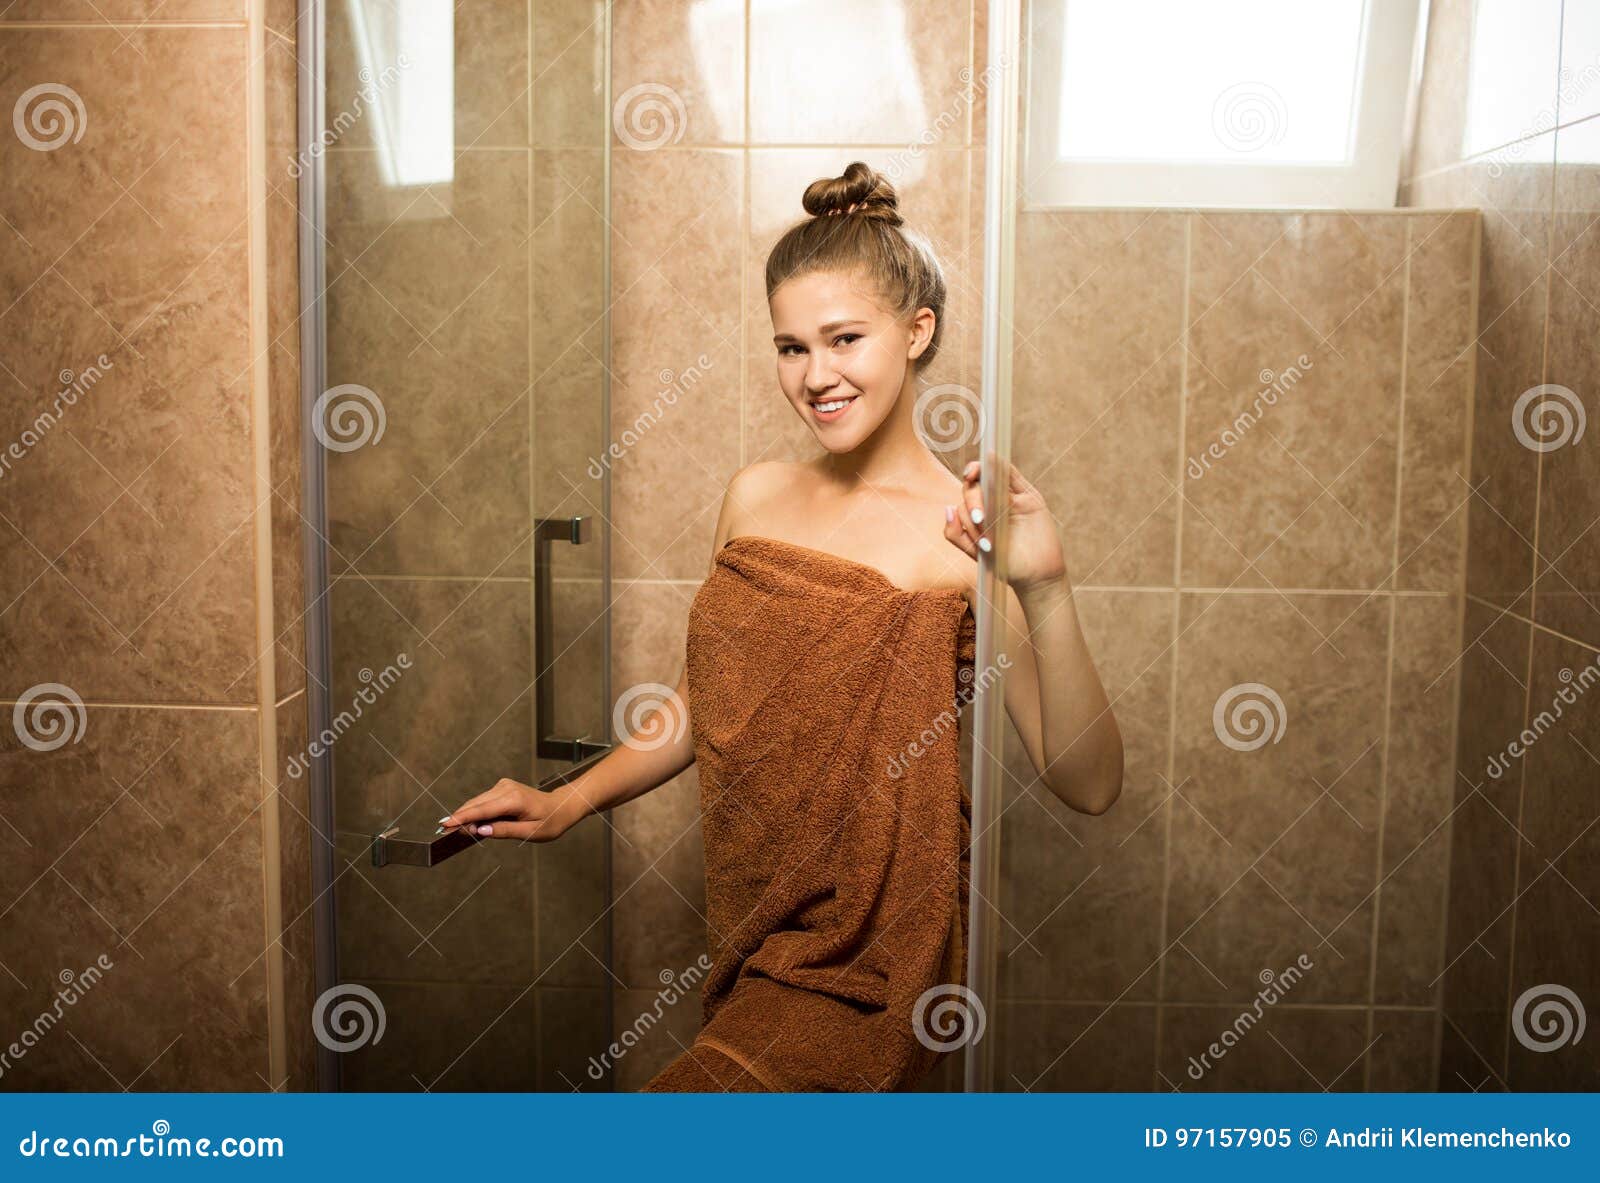 Best of Cute teen in shower